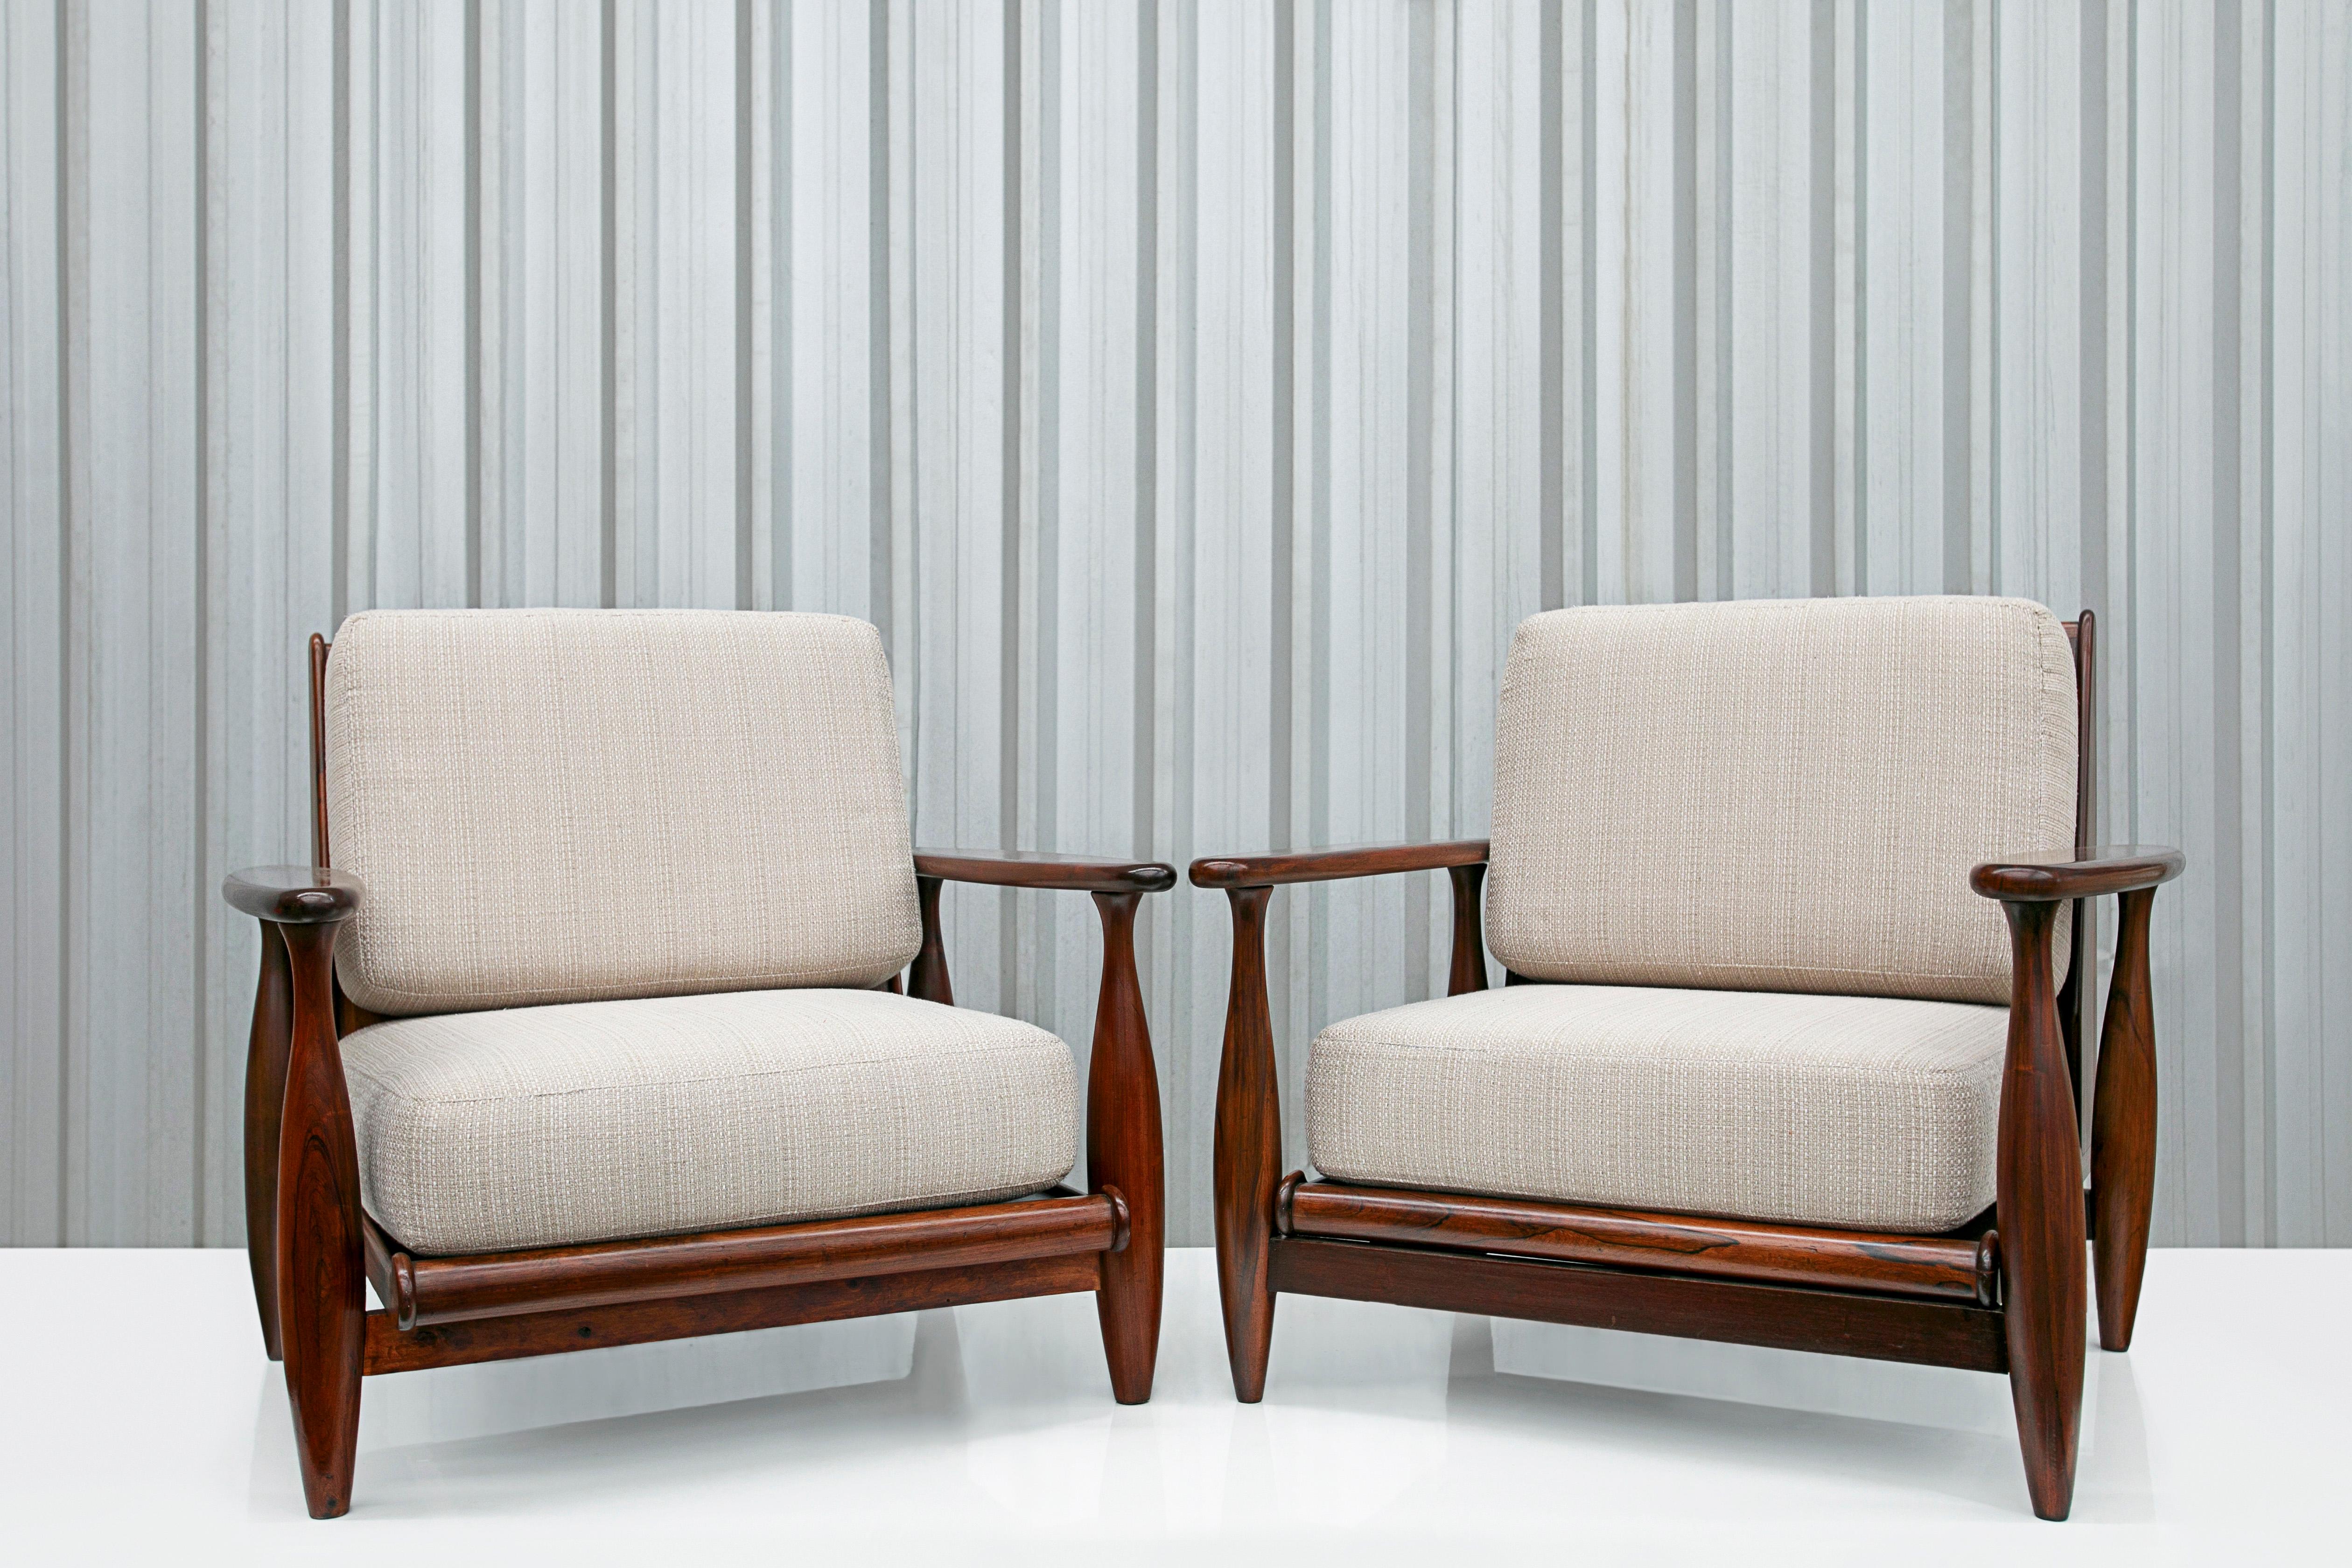 Disponible aujourd'hui, ce spectaculaire ensemble de fauteuils Mid-Century Modern en bois dur et tissu de coton beige conçu par Liceu de Artes e Oficios, dans les années soixante, n'est rien de moins que spectaculaire.

Ces fauteuils impressionnants